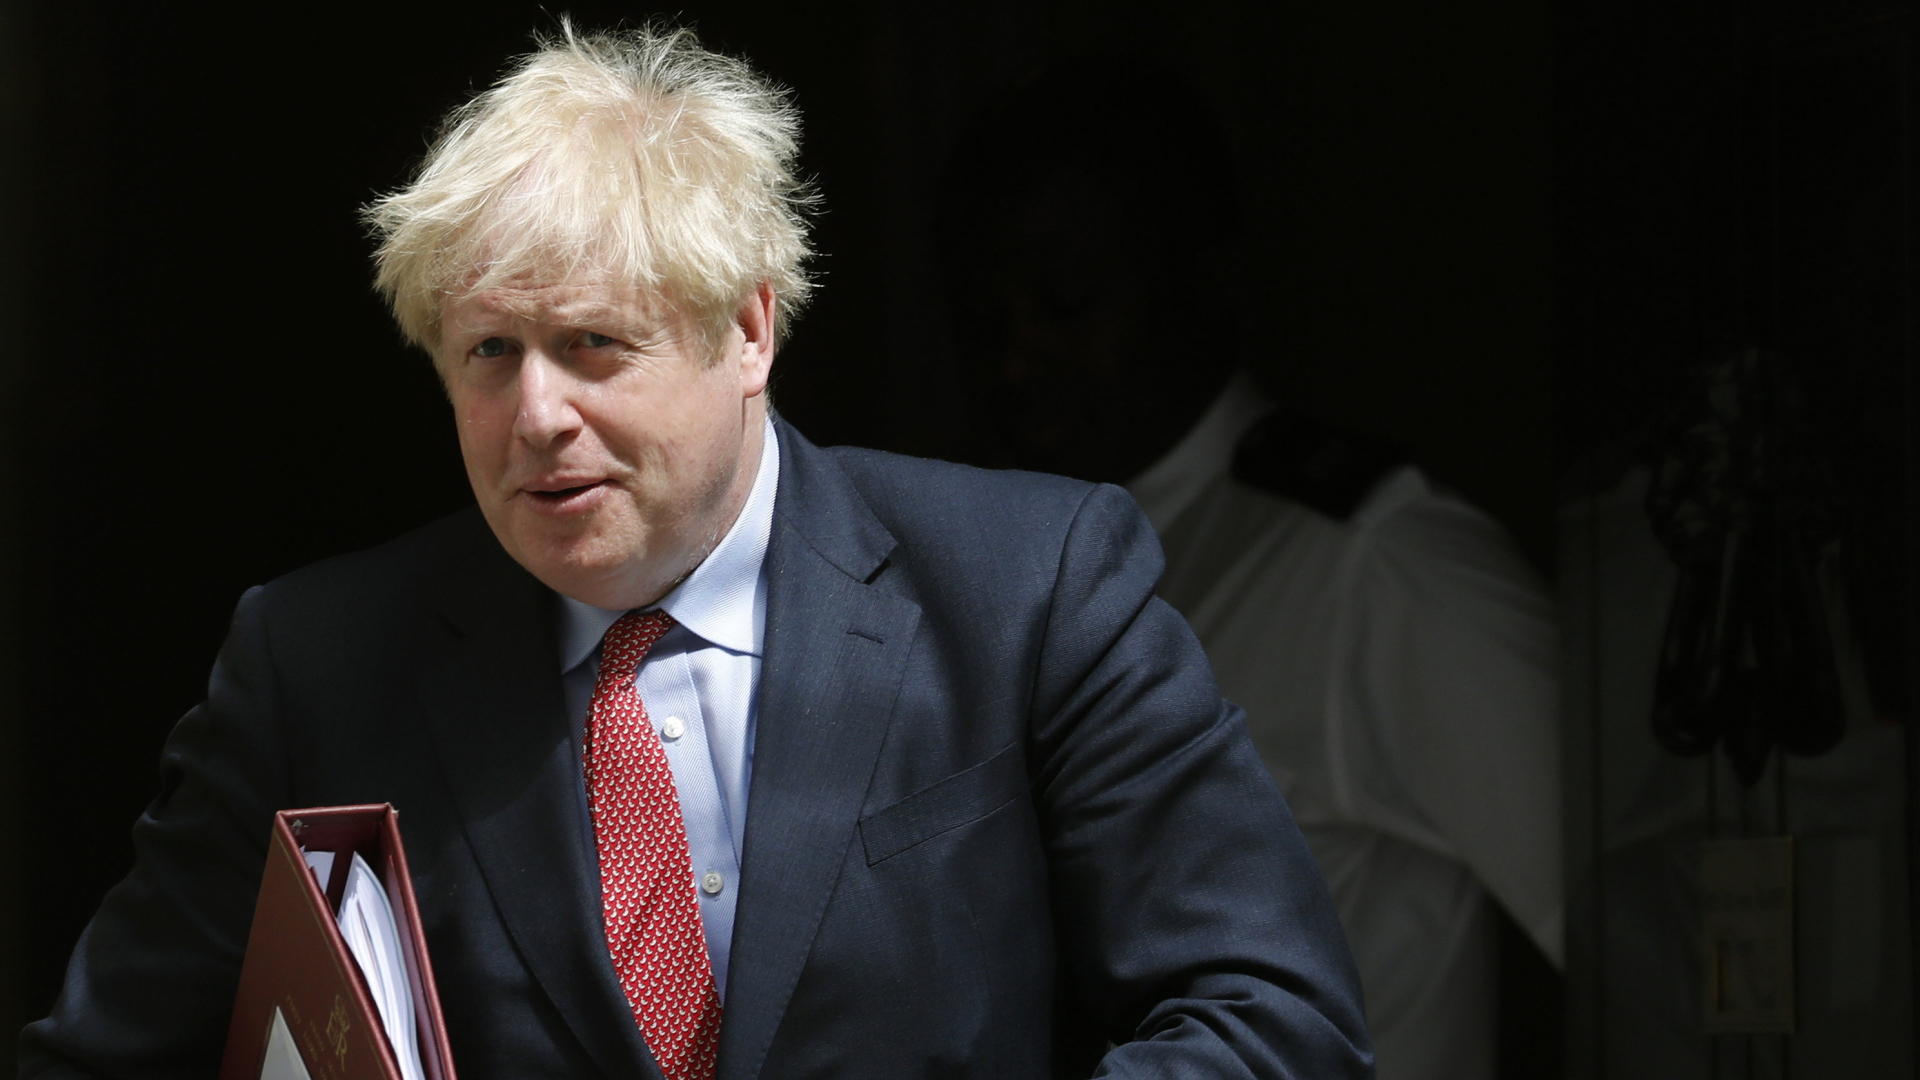 UK: Johnson's plans after scandal